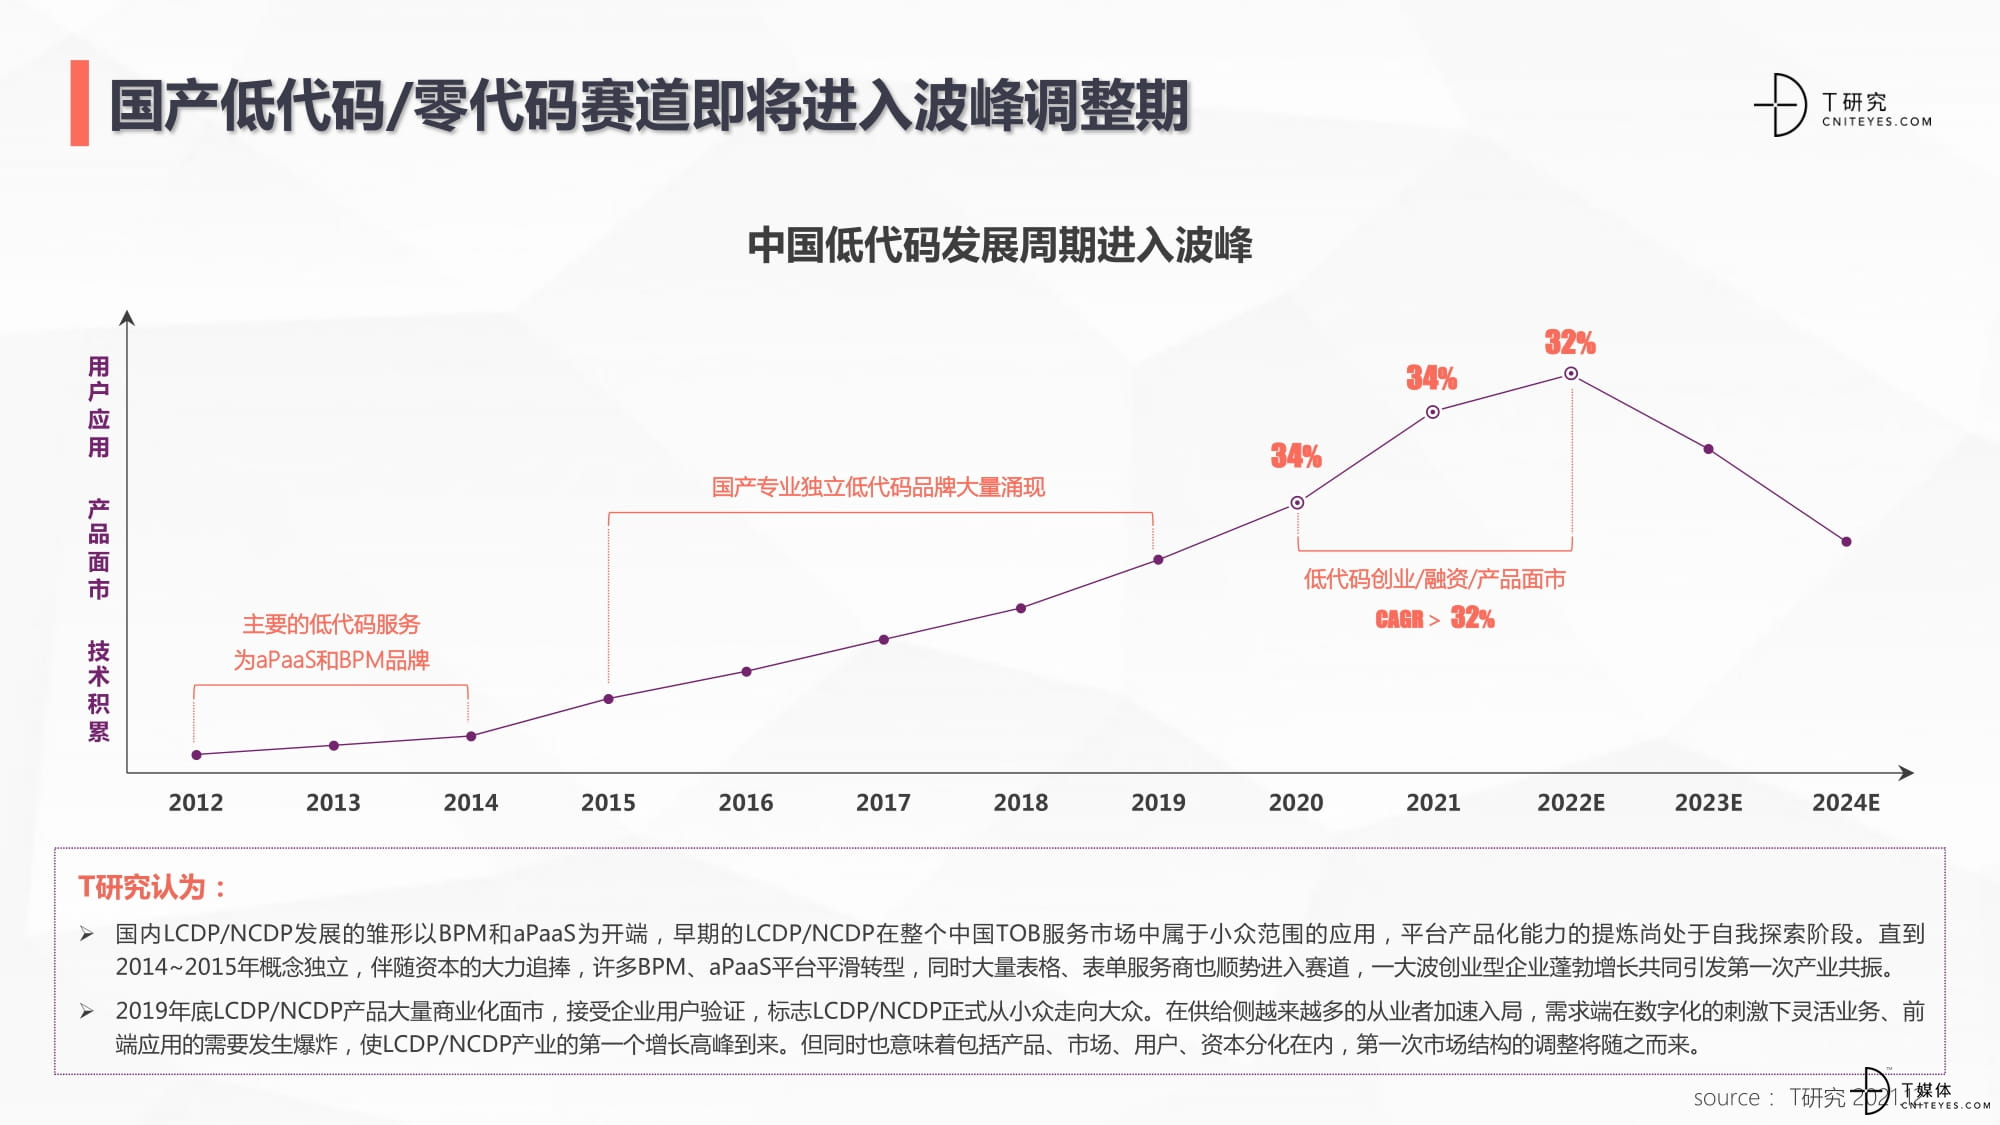 2021中国低代码全景产业研究报告20220117-07.jpg